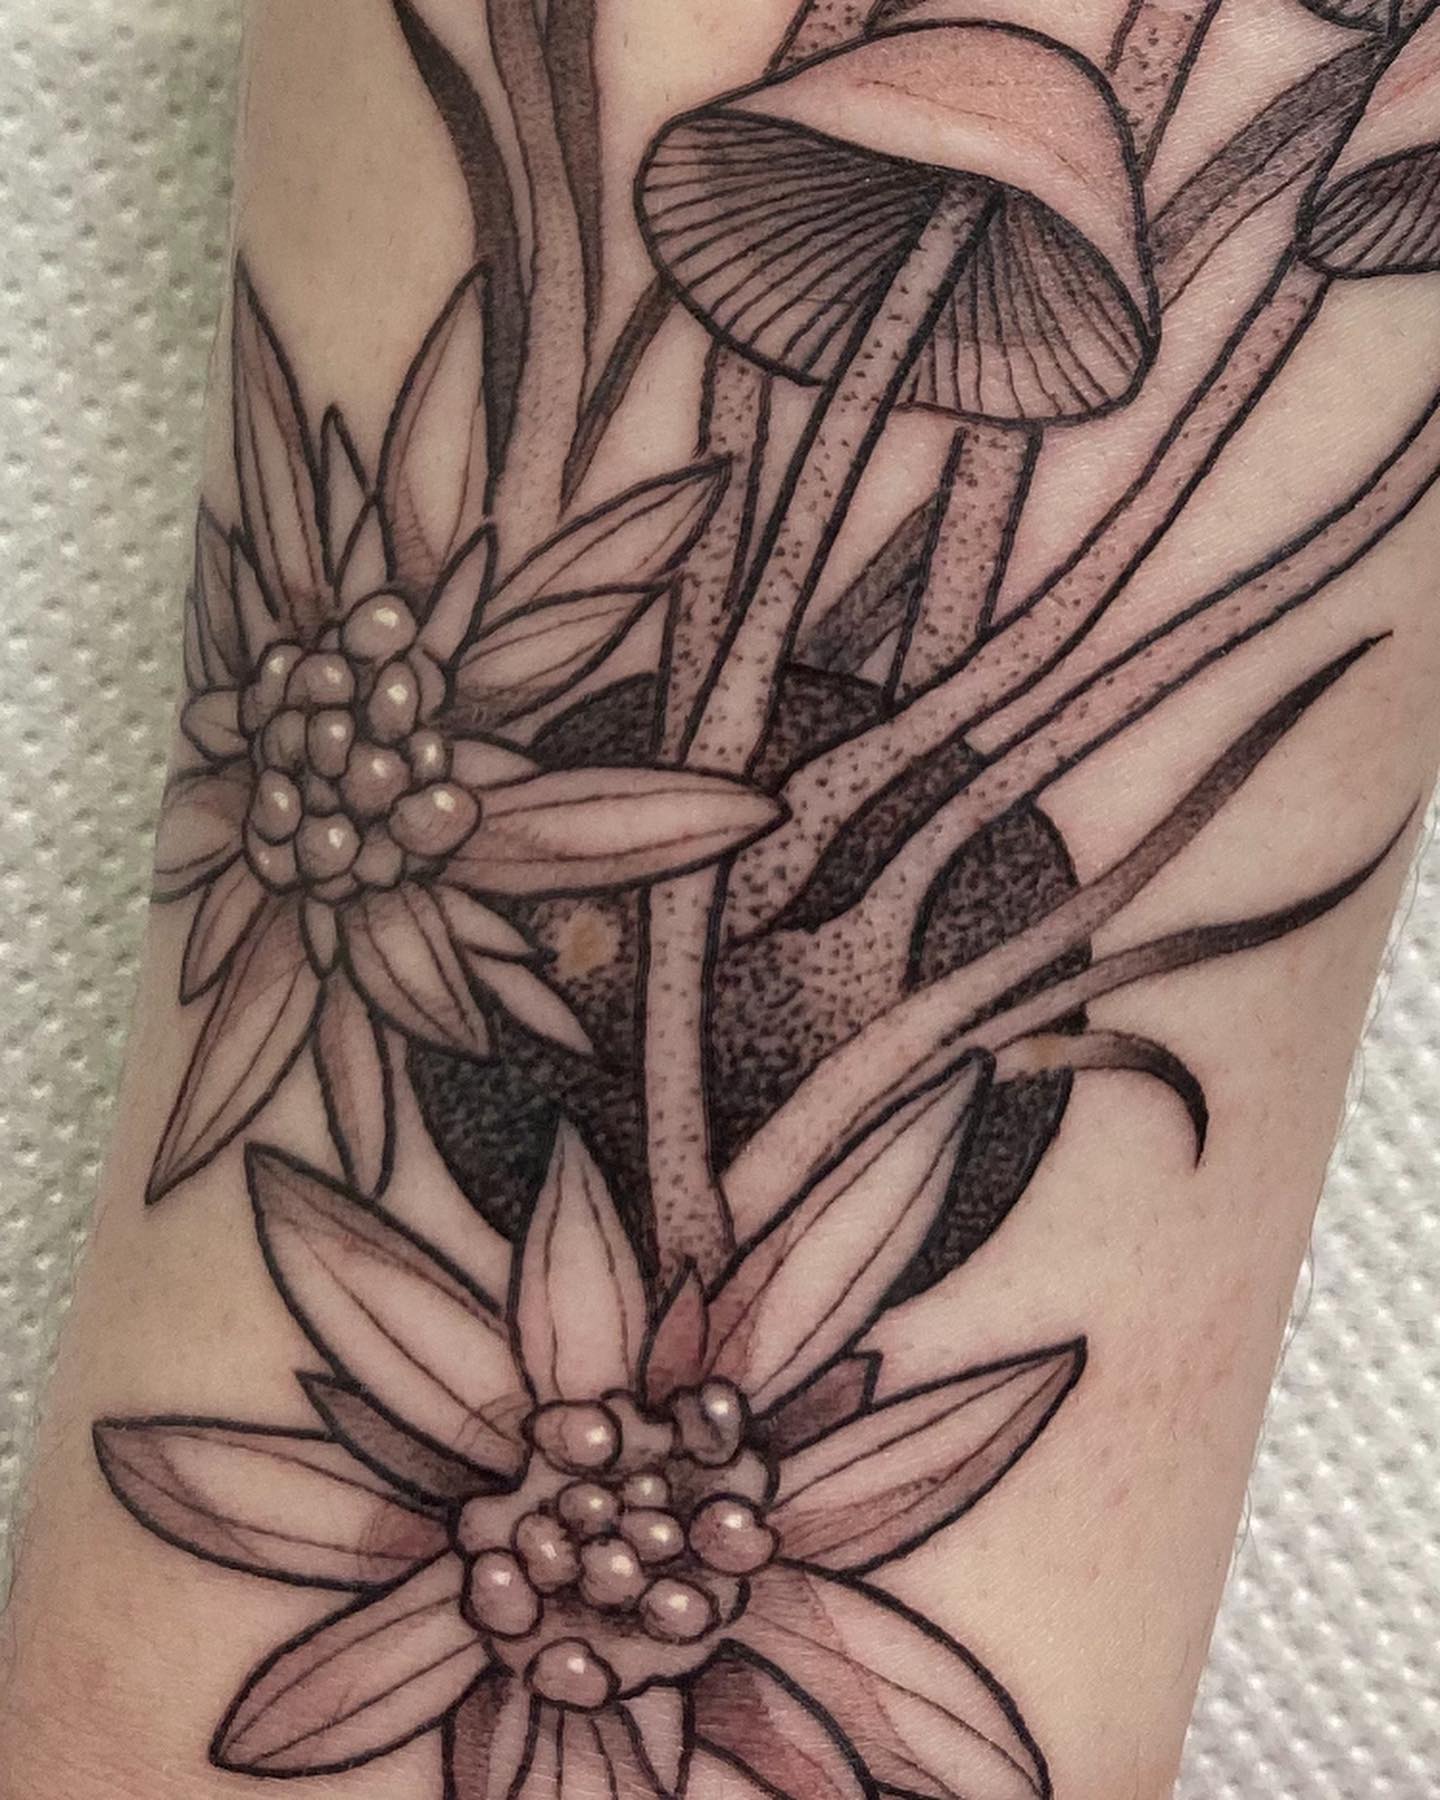 Tattoo uploaded by Robert Davies • Wishing Well Tattoo by Jack Ankersen  #wishingwell #wishingwelltattoo #wishingwelltattoos #welltattoos  #JackAnkersen • Tattoodo